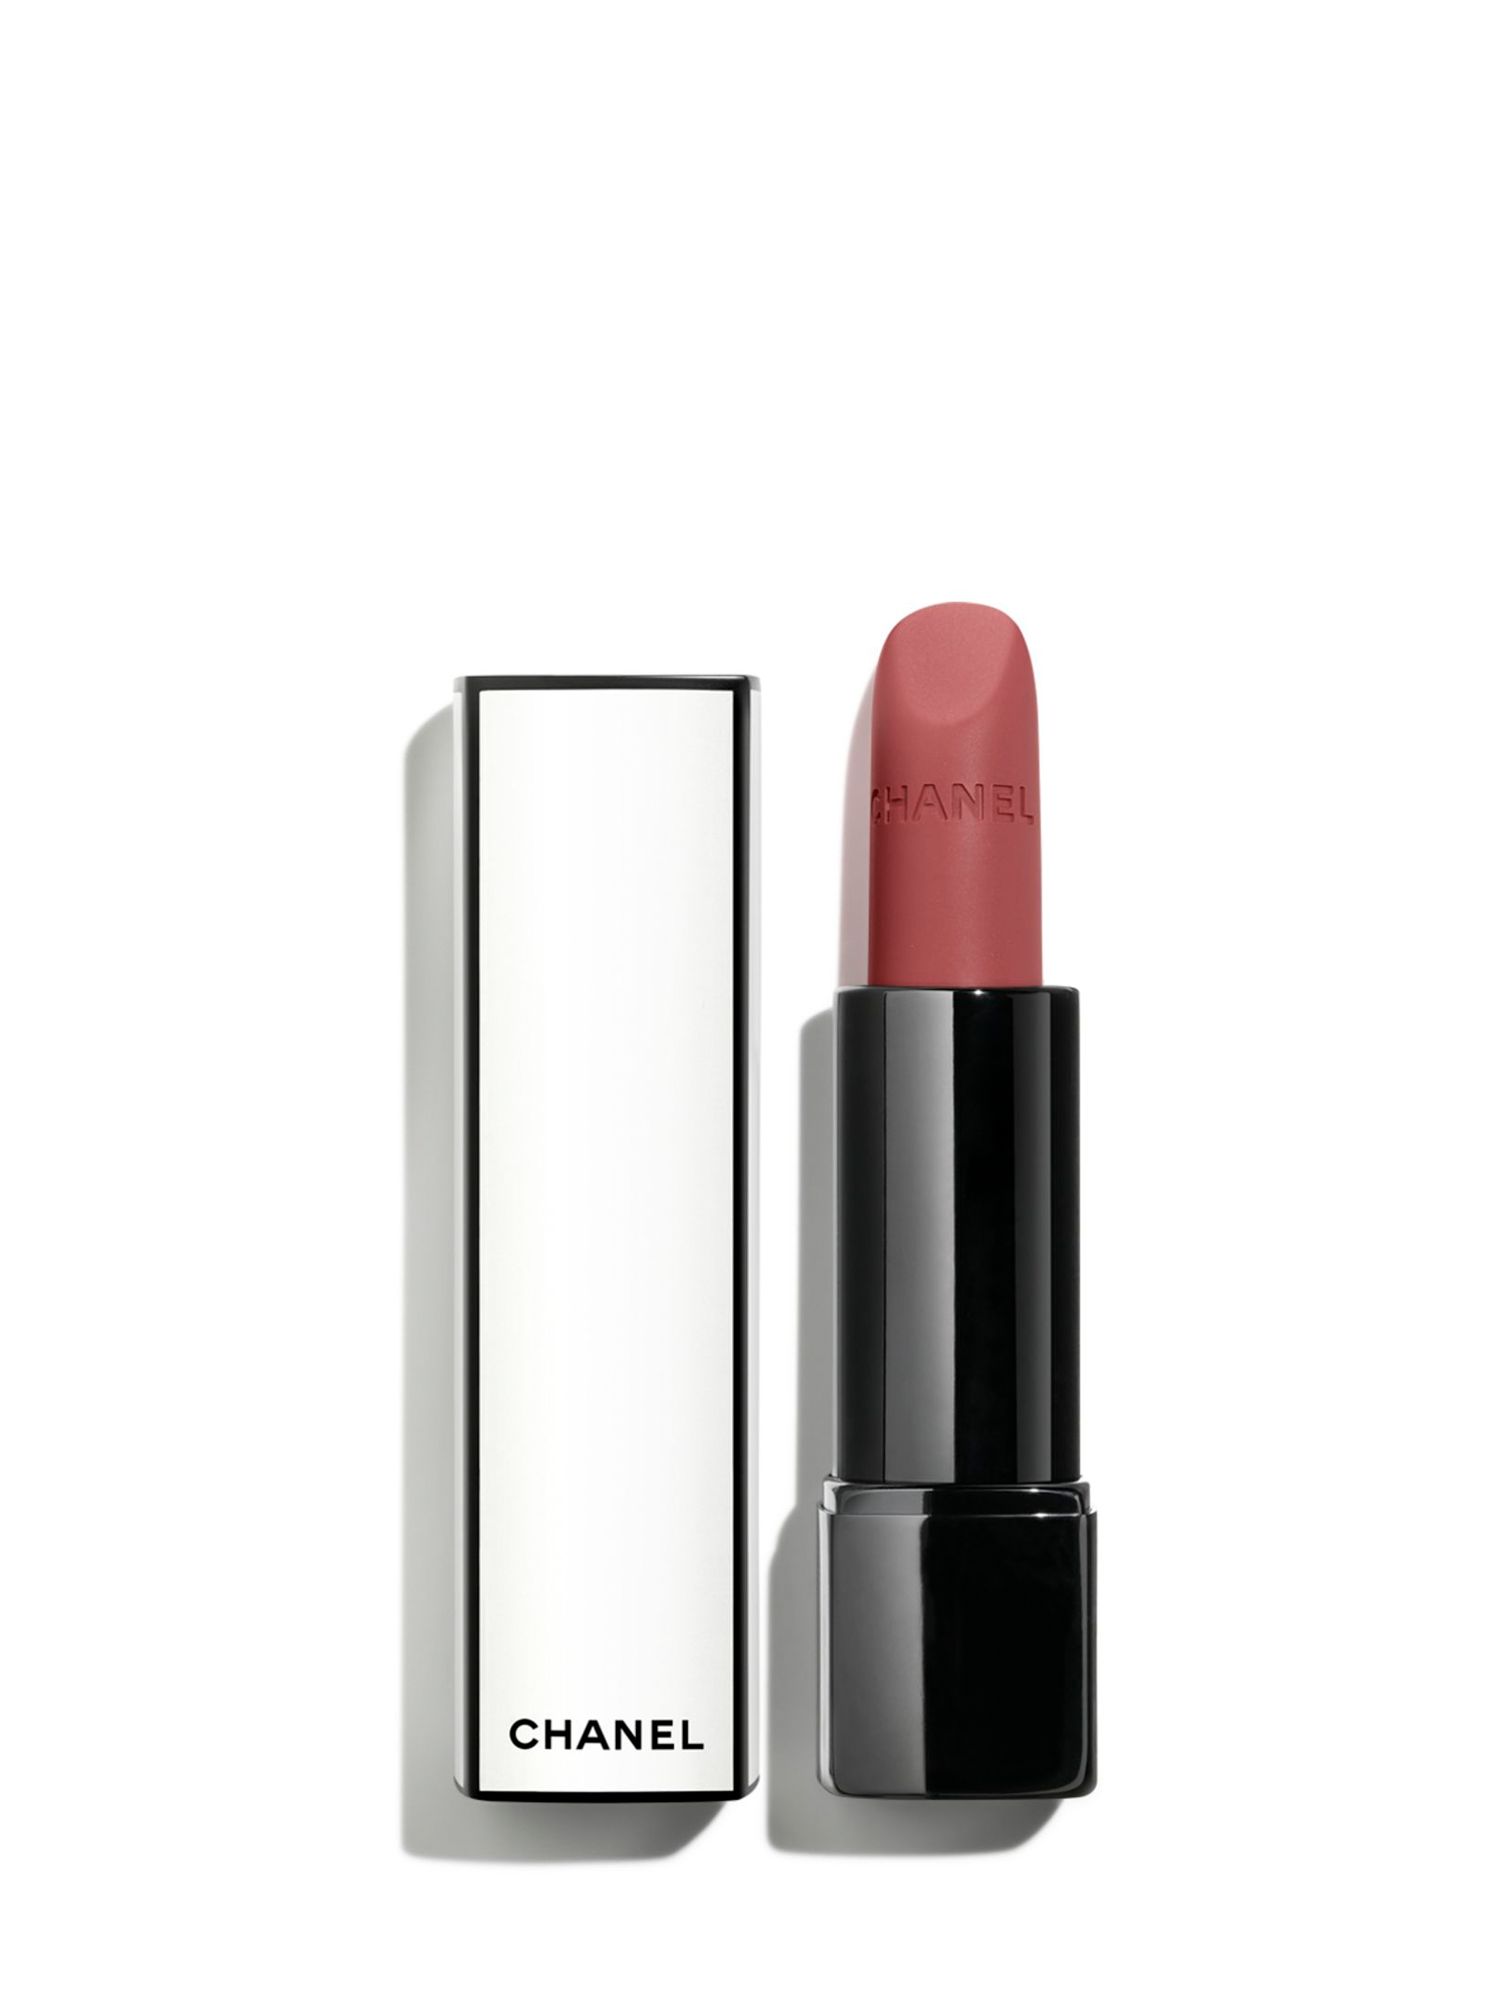 CHANEL Rouge Allure Velvet Nuit Blanche Limited Edition - Luminous Matte Lip Colour, 06:00 1